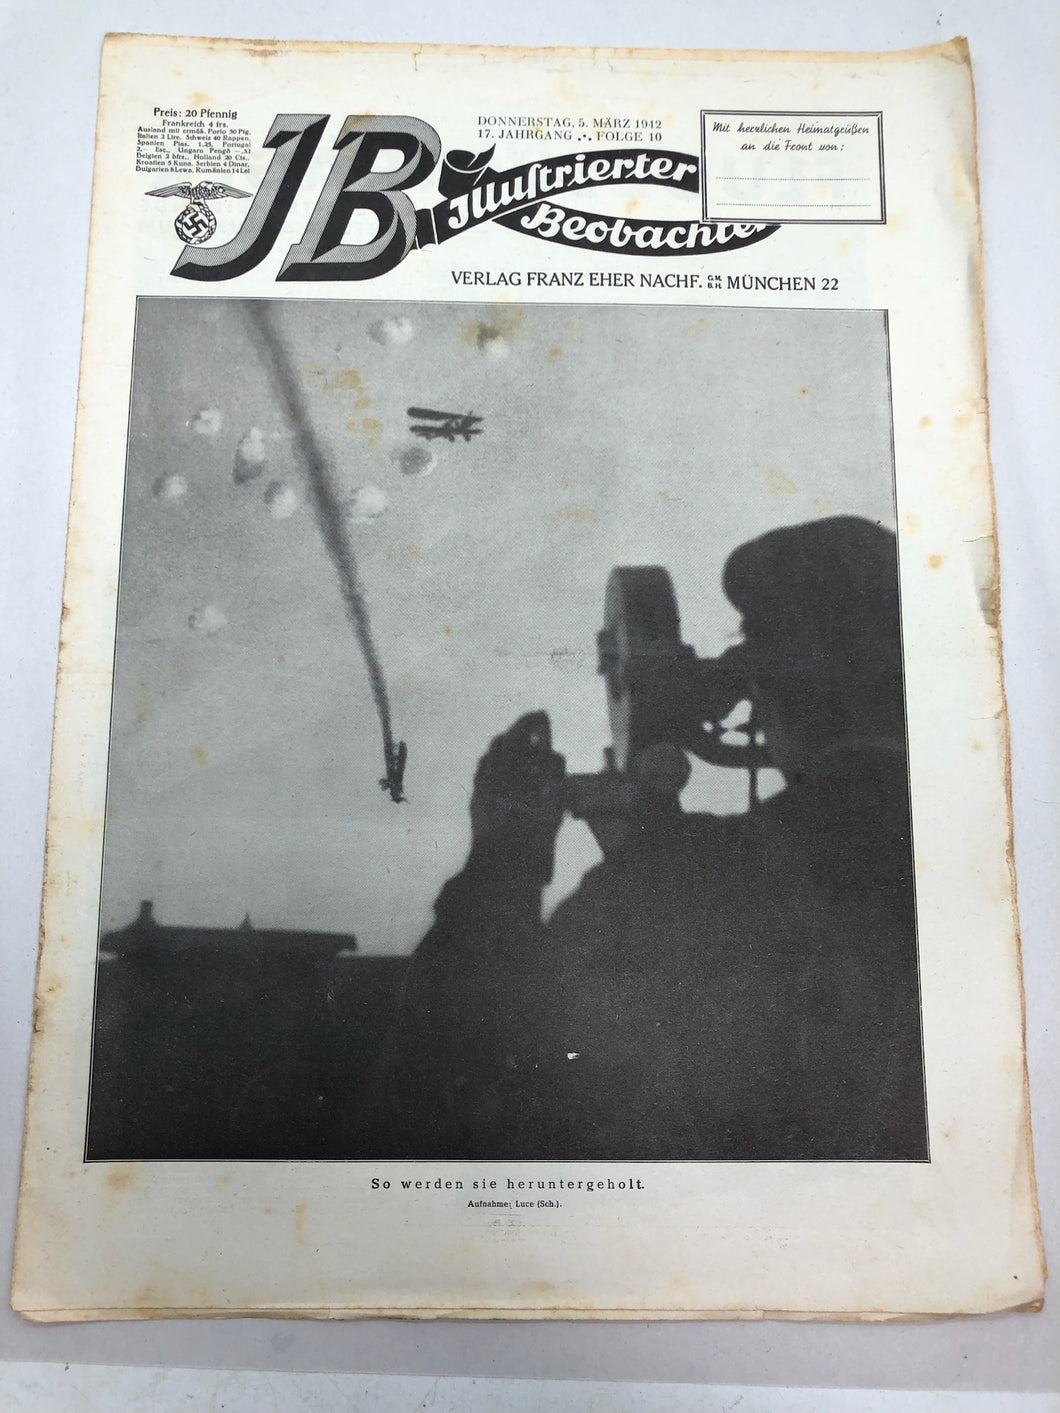 JB Juustrierter Beobachter NSDAP Magazine Original WW2 German - 5 March 1942